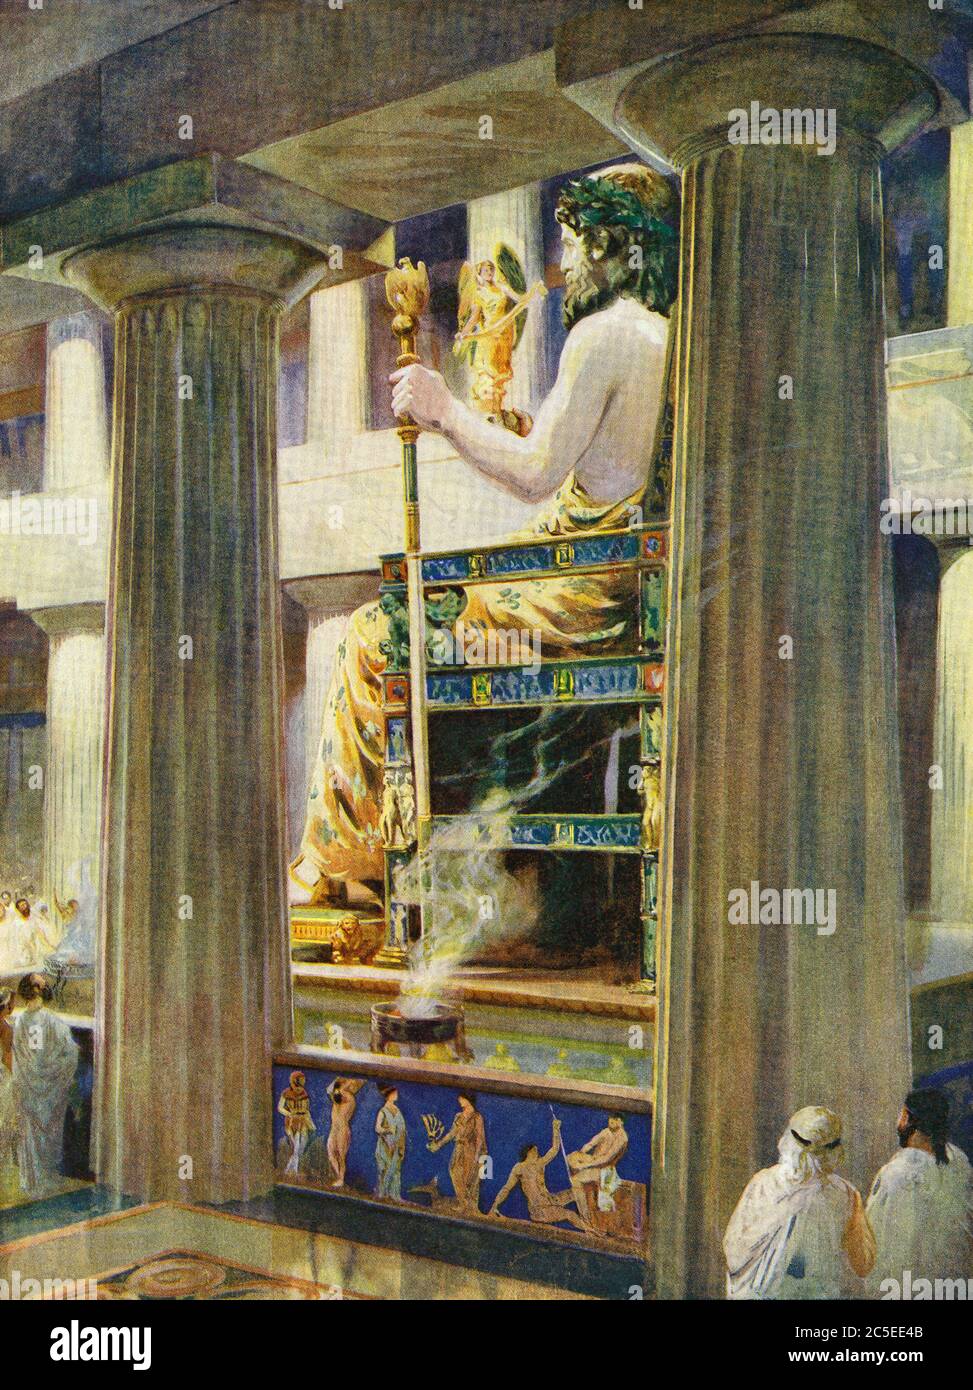 Statua di Zeus nel Tempio di Zeus, Olimpia nell'antica Grecia. Fu fatta dallo scultore greco Phidias intorno al 435 a.C. ed era una delle sette meraviglie del mondo antico. Dopo un'illustrazione di Charles M. Sheldon. Foto Stock